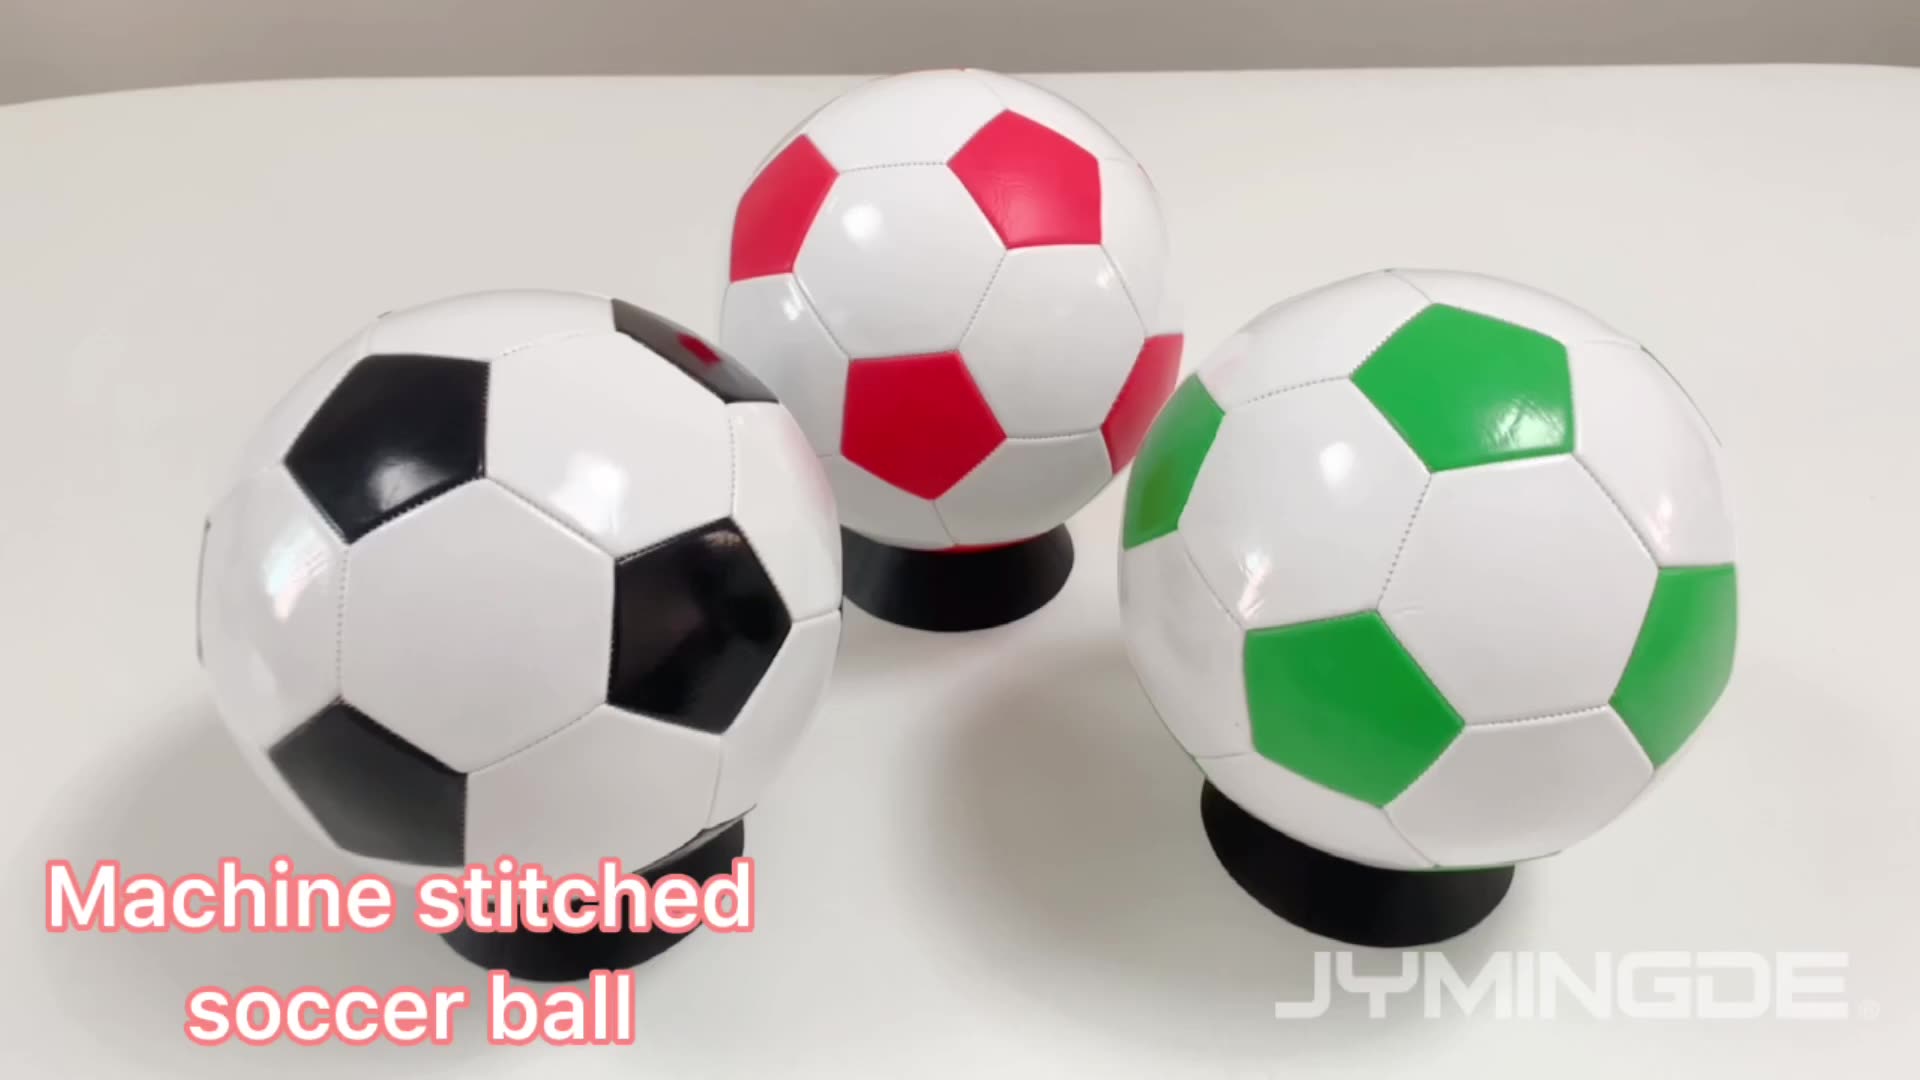 Custom logo PVC leather buy soccer balls online promotional soccer ball footballs size 5 soccer balls1